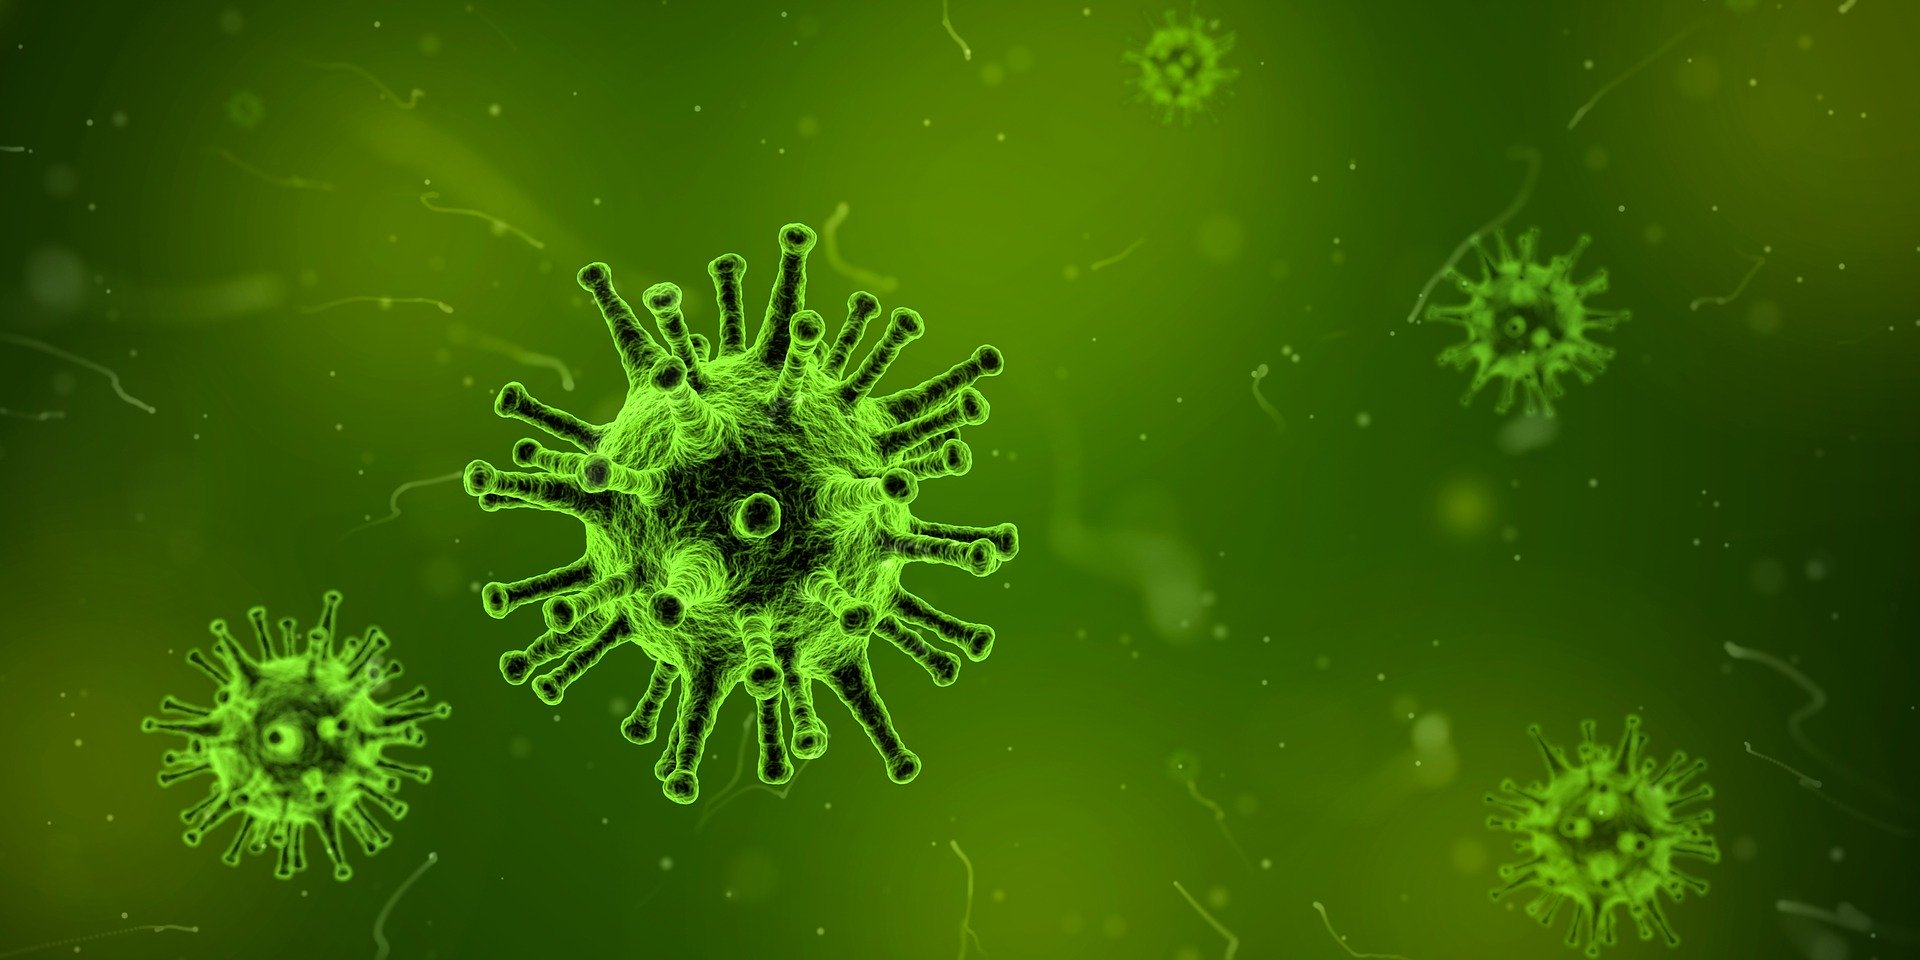 Eerste besmetting coronavirus in Duitsland 14